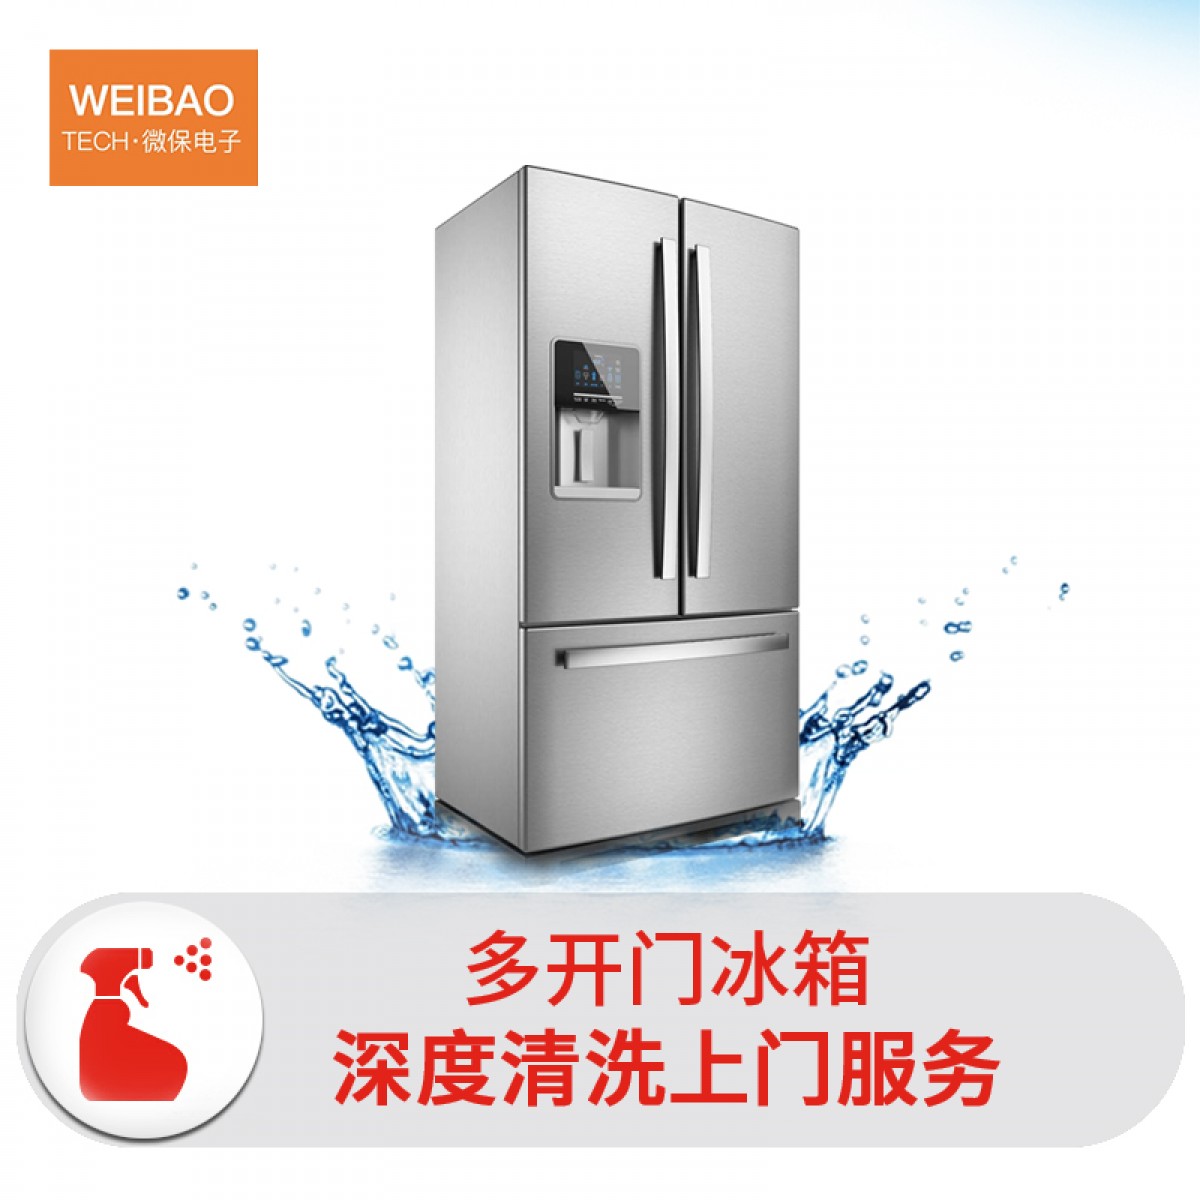 冰箱清洗 多门冰箱（4门及以上） 家电清洗保养 保洁上门到家服务 洗冰箱